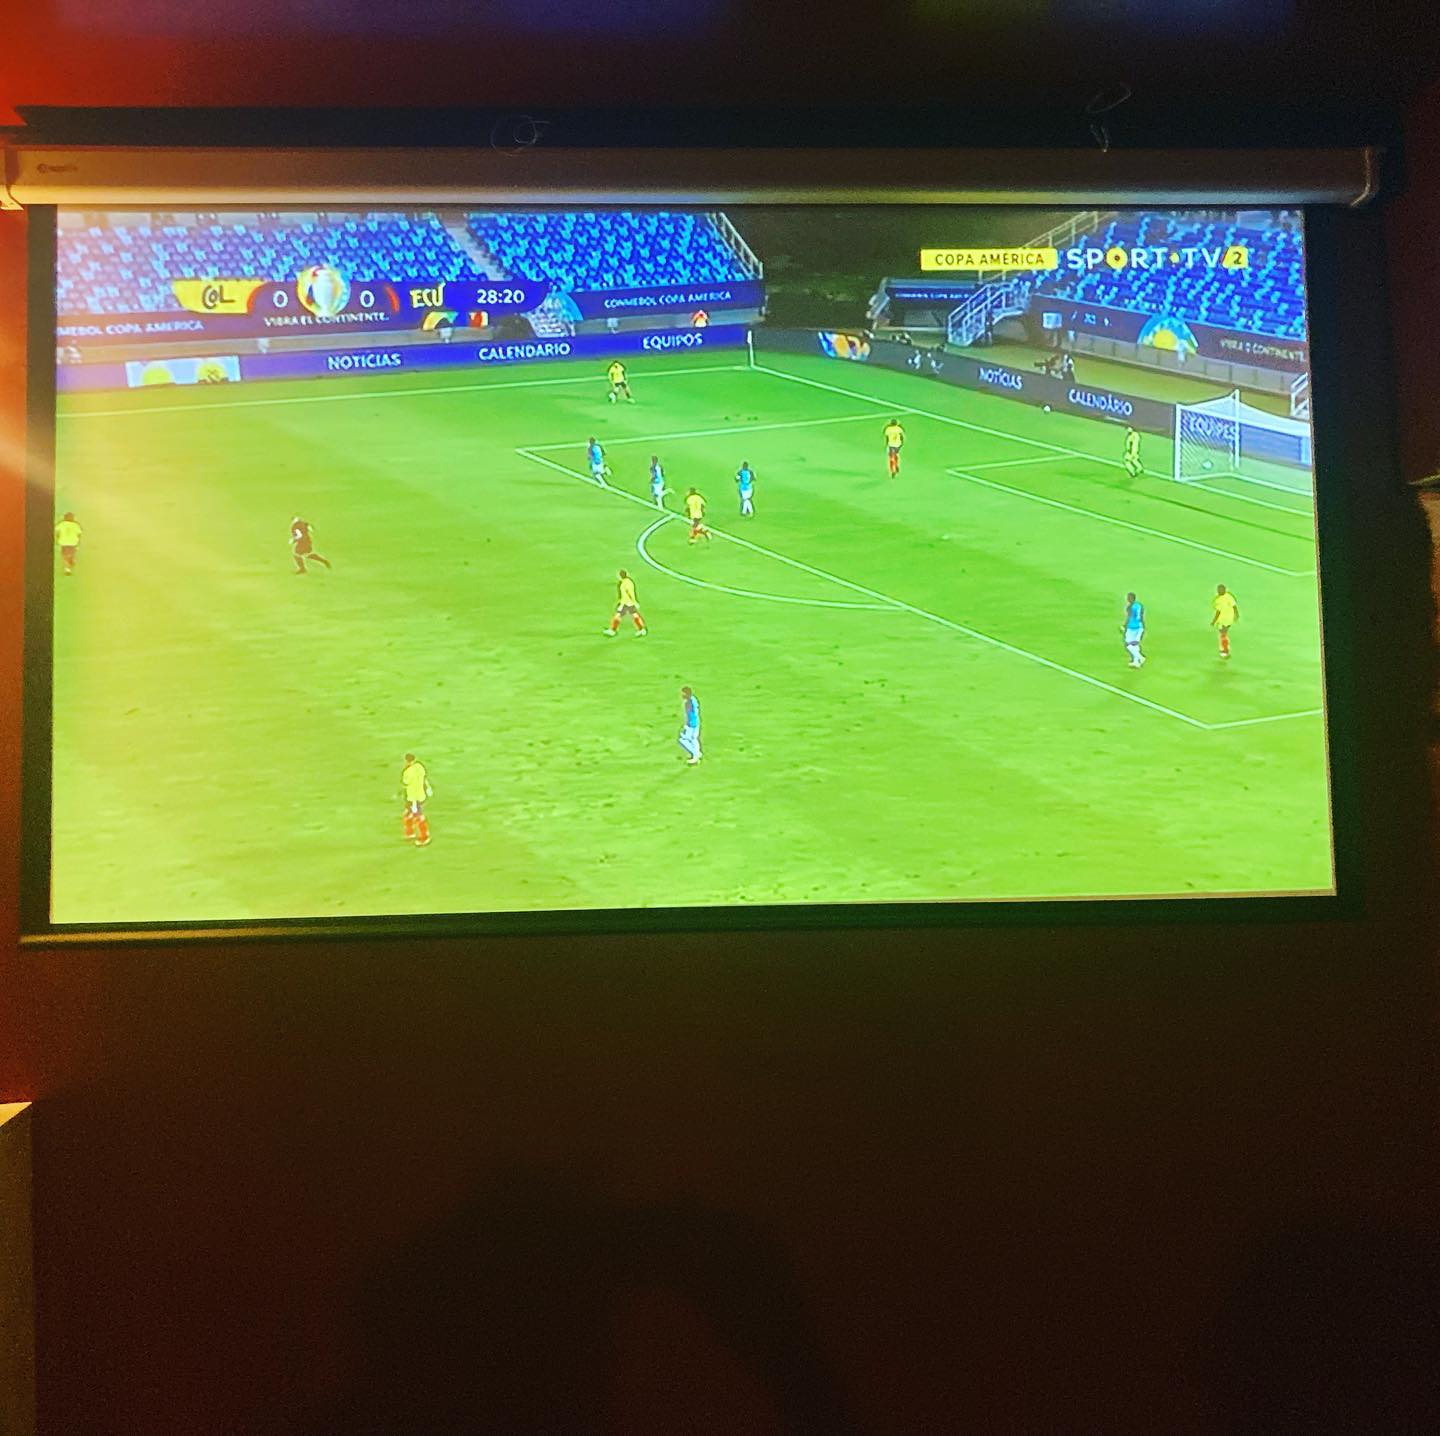 All FOOTBALL Games at Embaixada on BIG Screens